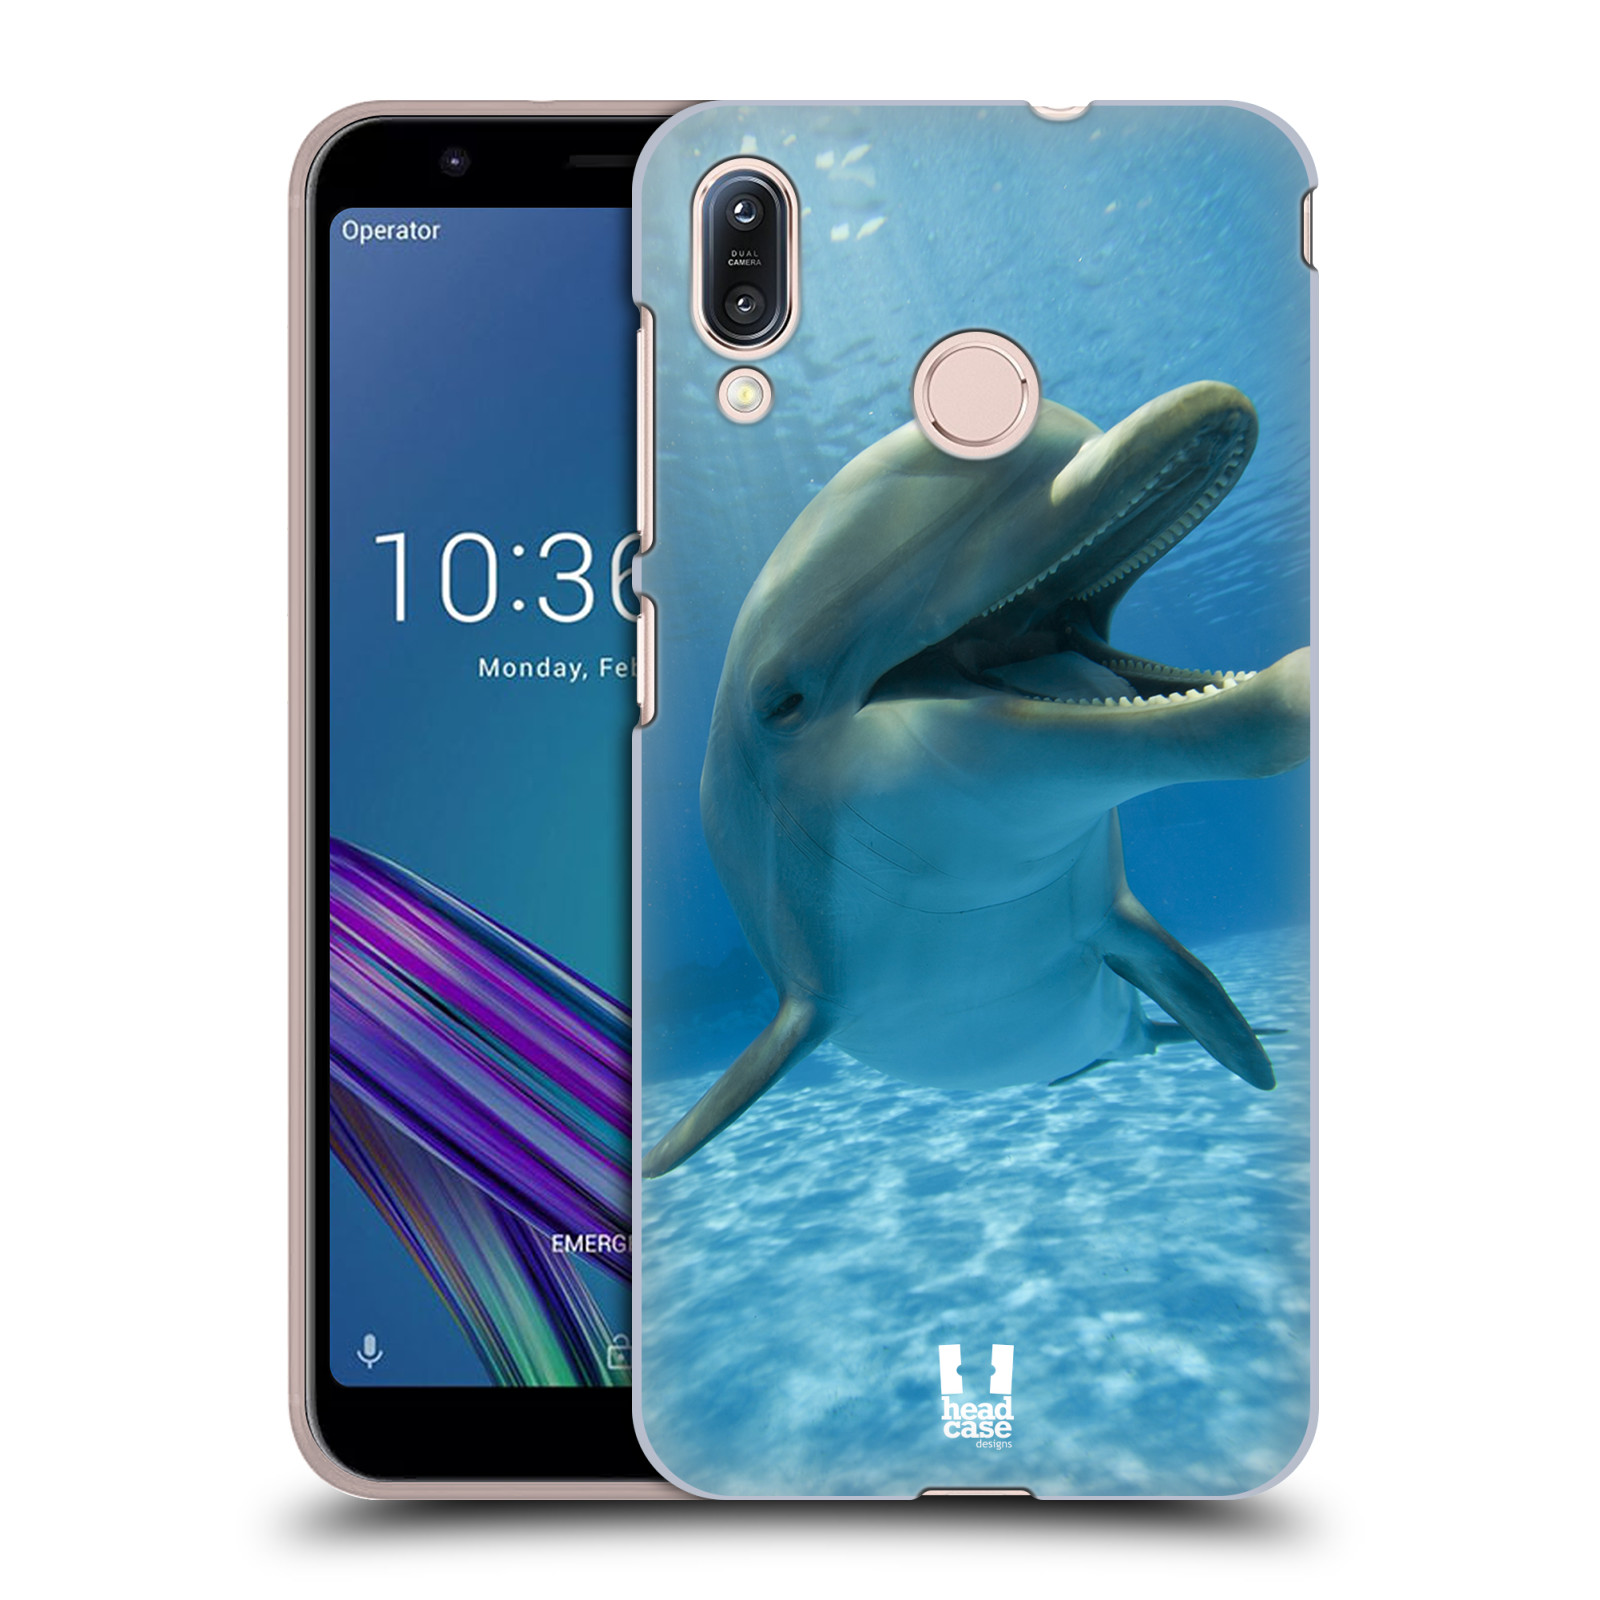 Zadní obal pro mobil Asus Zenfone Max (M1) ZB555KL - HEAD CASE - Svět zvířat delfín v moři